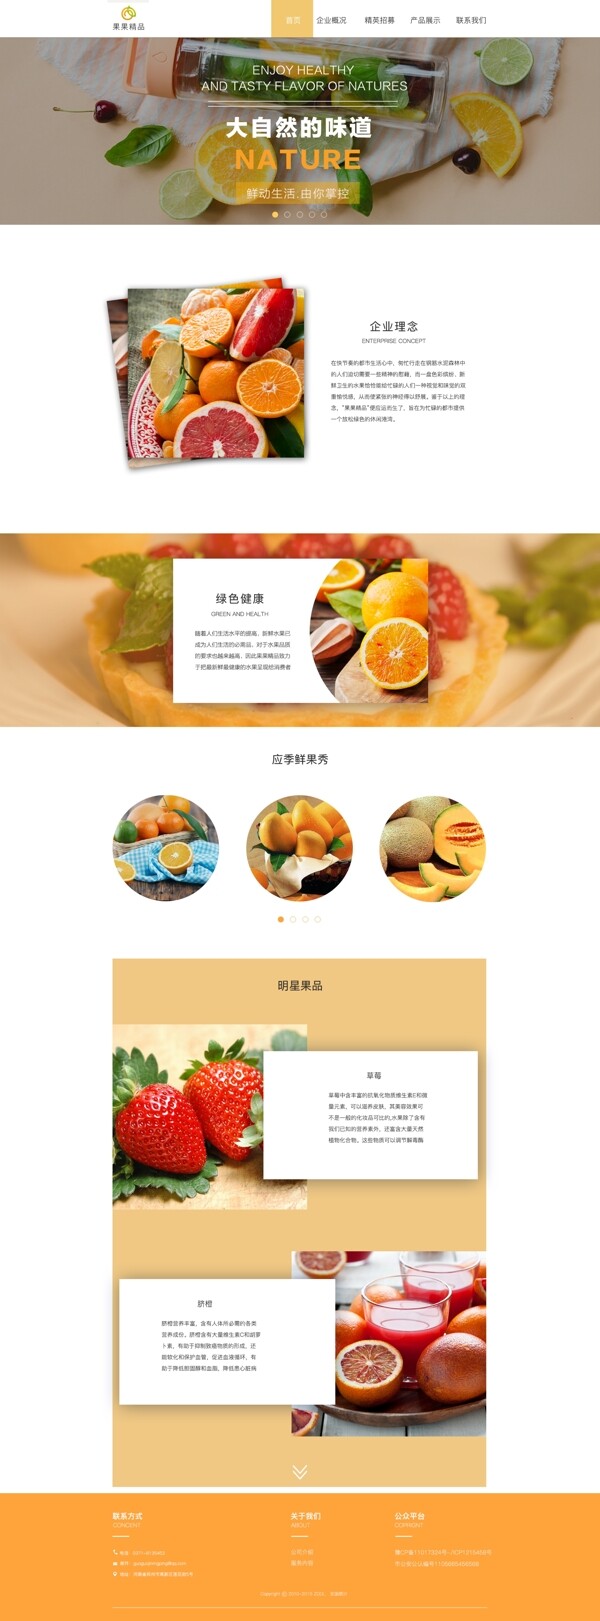 果果精品水果网站橙色企业站首页